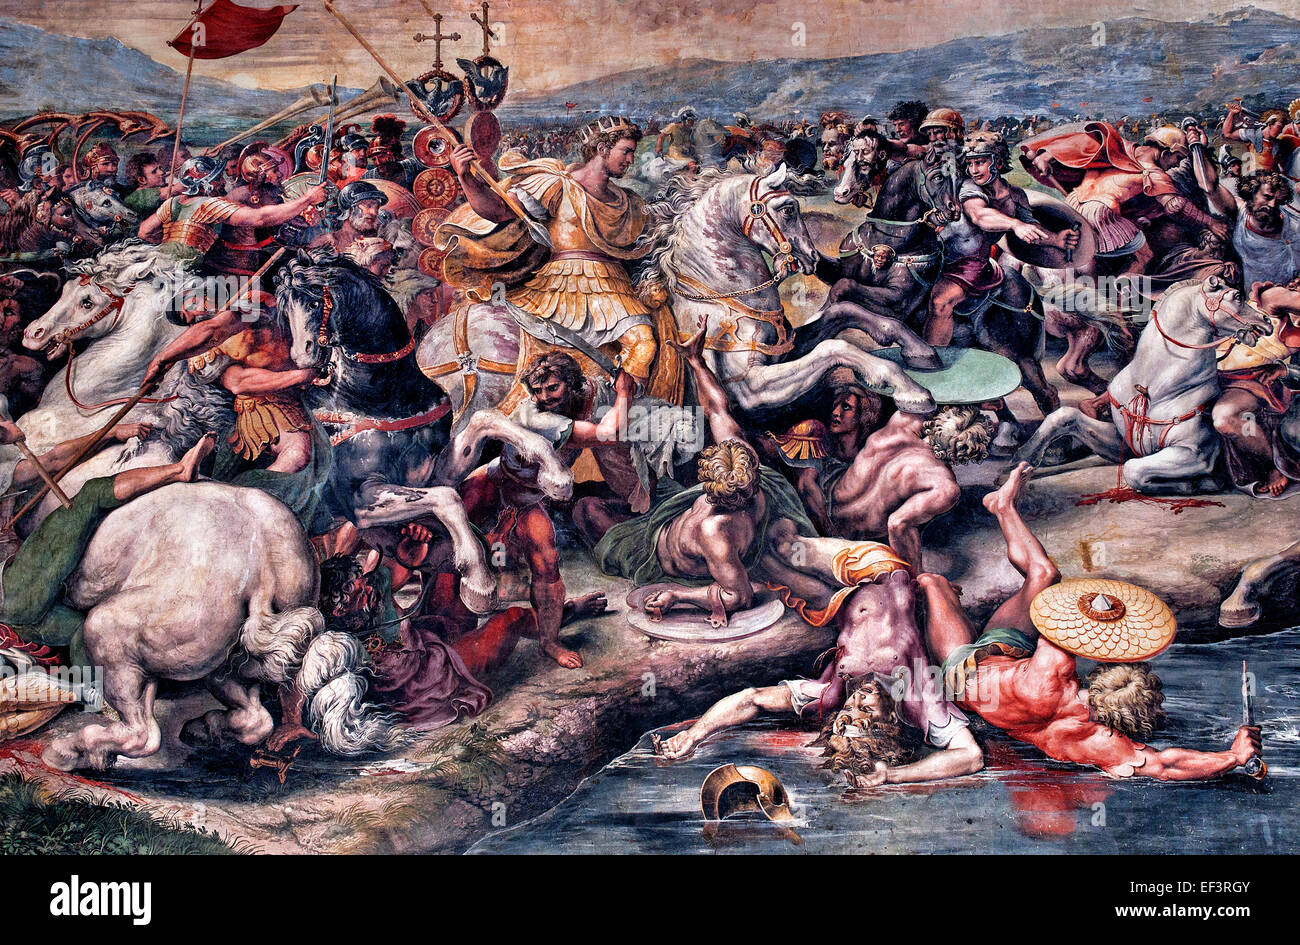 Detail aus der Schlacht an der Milvischen Brücke 1517-1524 von Giulio Romano Assistent Raphael gemalt (die Schlacht an der Milvischen Brücke nahm Platz zwischen dem römischen Kaiser Constantine I und Maxentius am 28 Oktober 312.) Stanzen des Raffael (Tanze di Raffaello) Raffaello Sanzio da Urbino 1483 – 1520 fresco päpstlichen Gemächer Vatikan Rom Italien Stockfoto